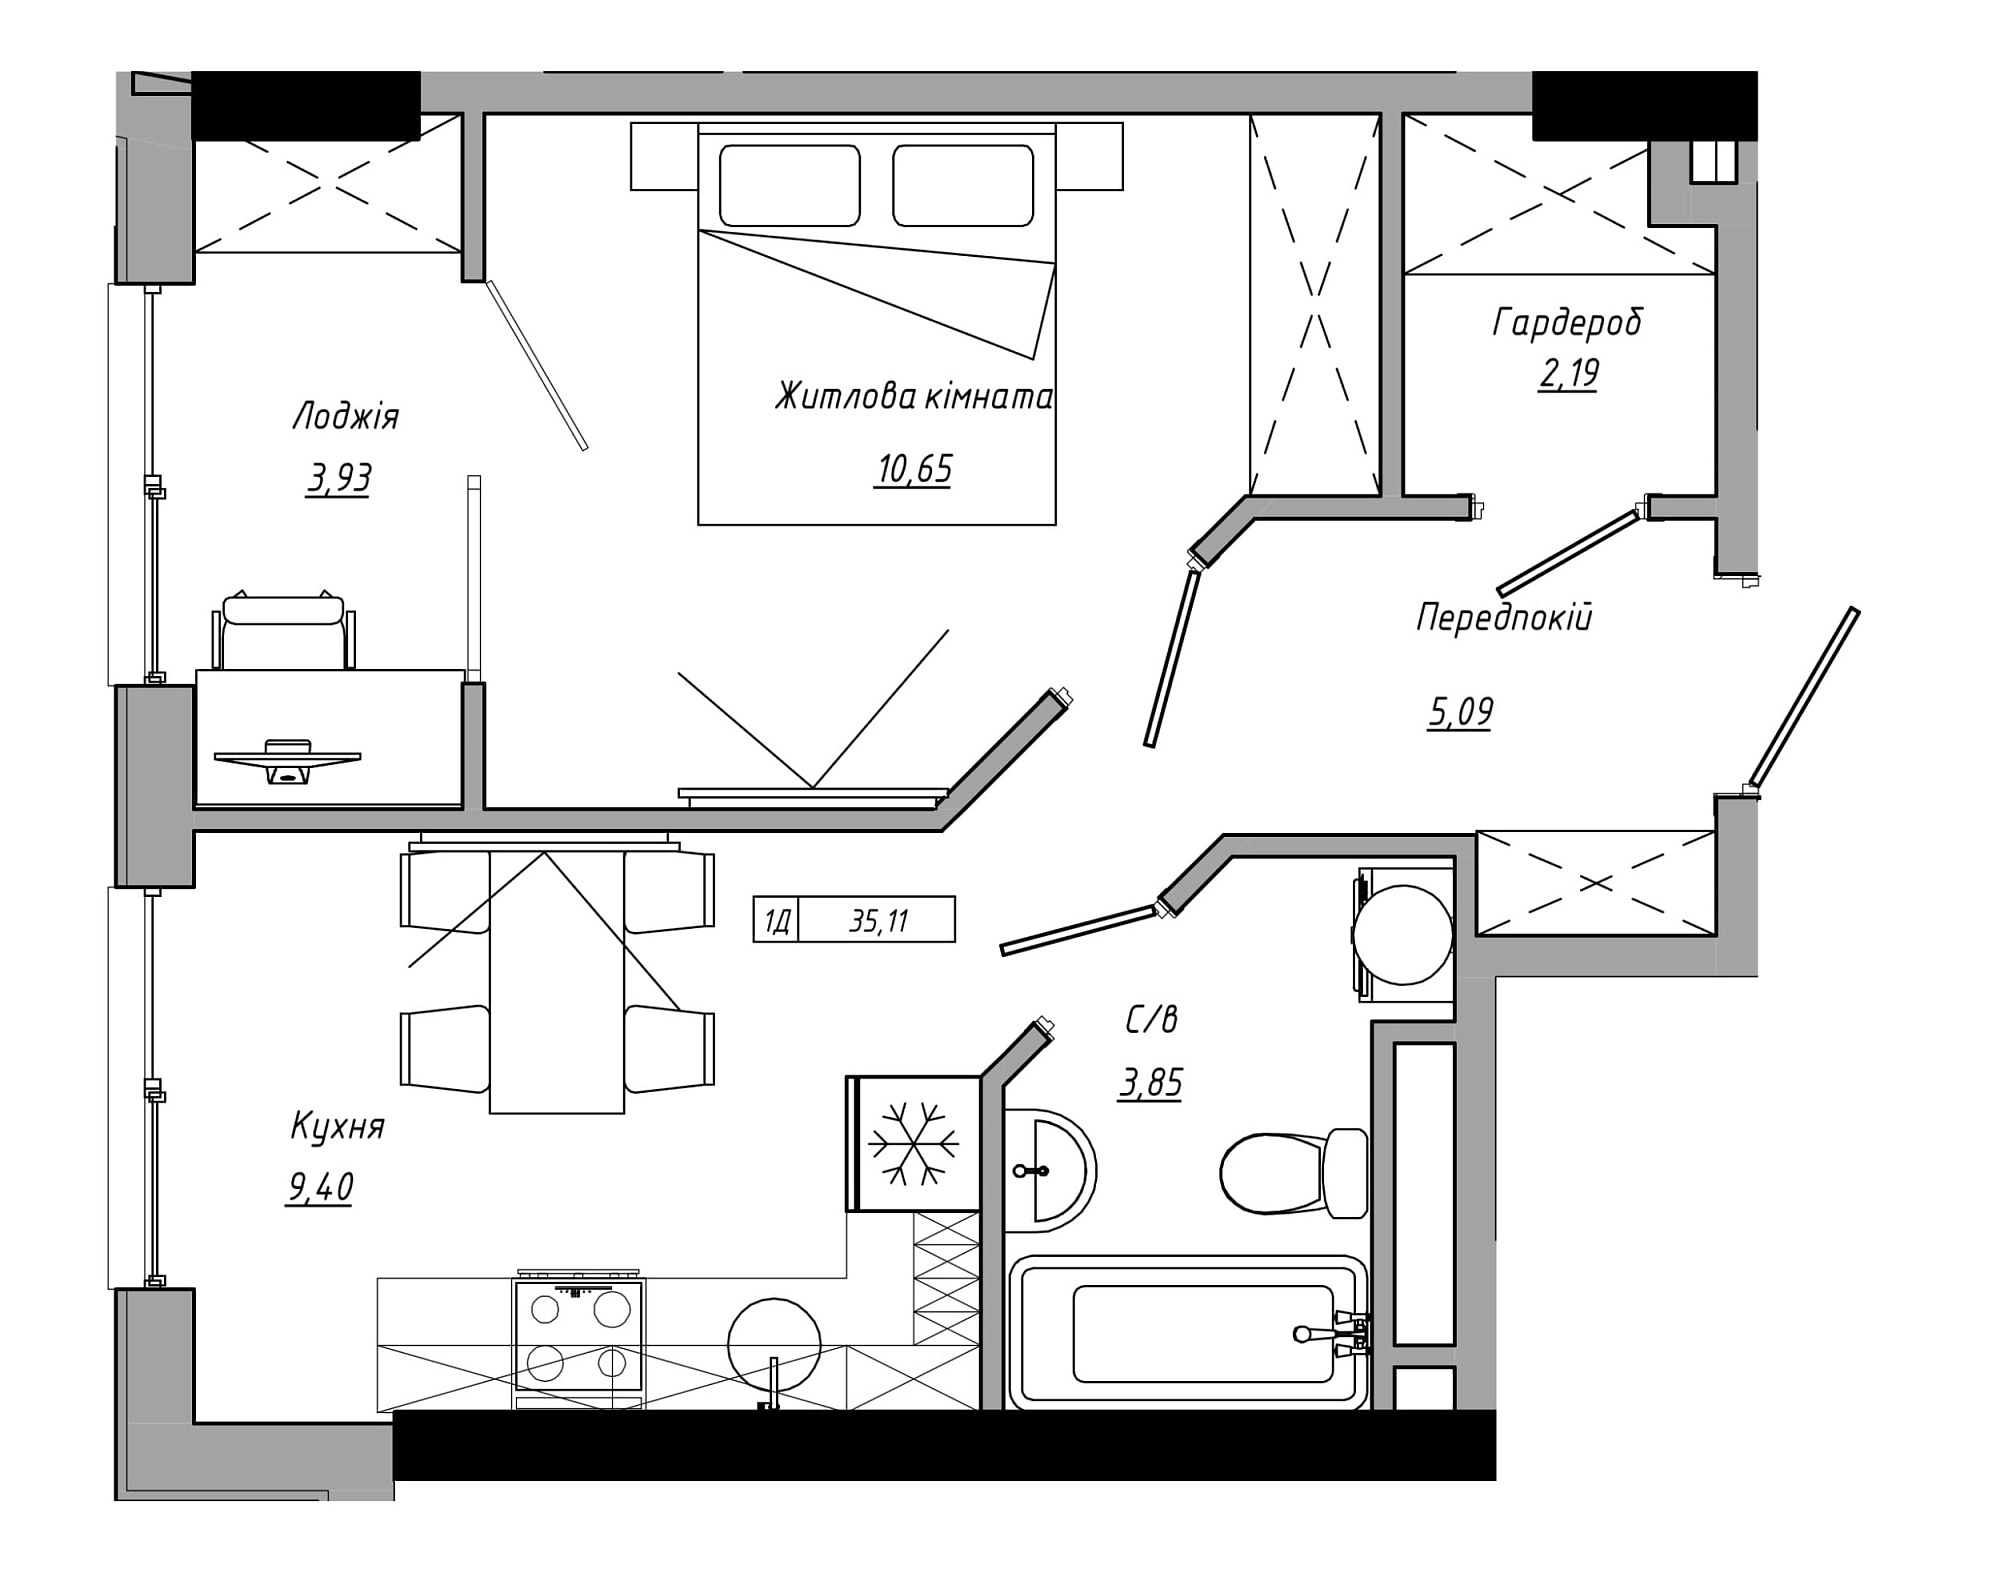 Планування 1-к квартира площею 35.11м2, AB-21-09/00006.